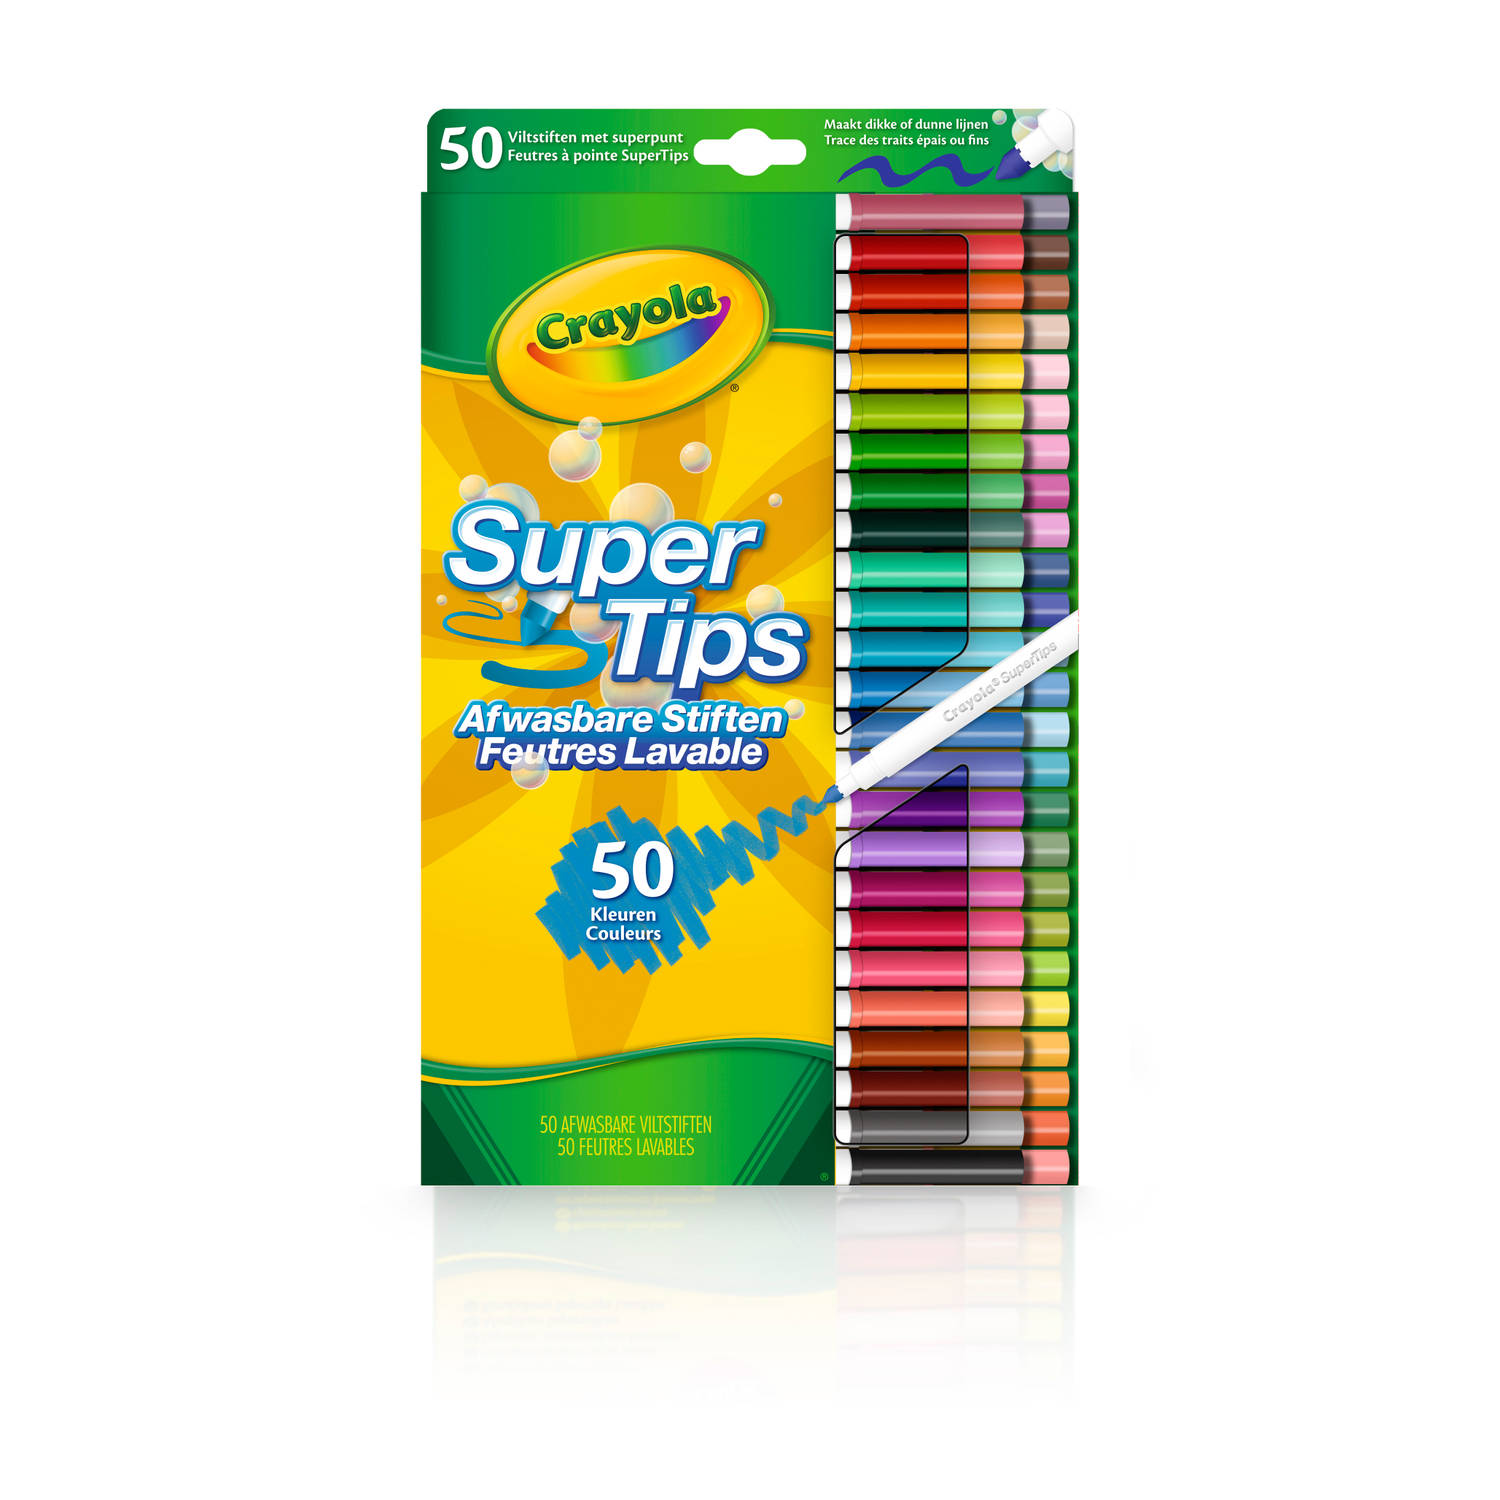 Crayola Supertips - 50 viltstiften met superpunt